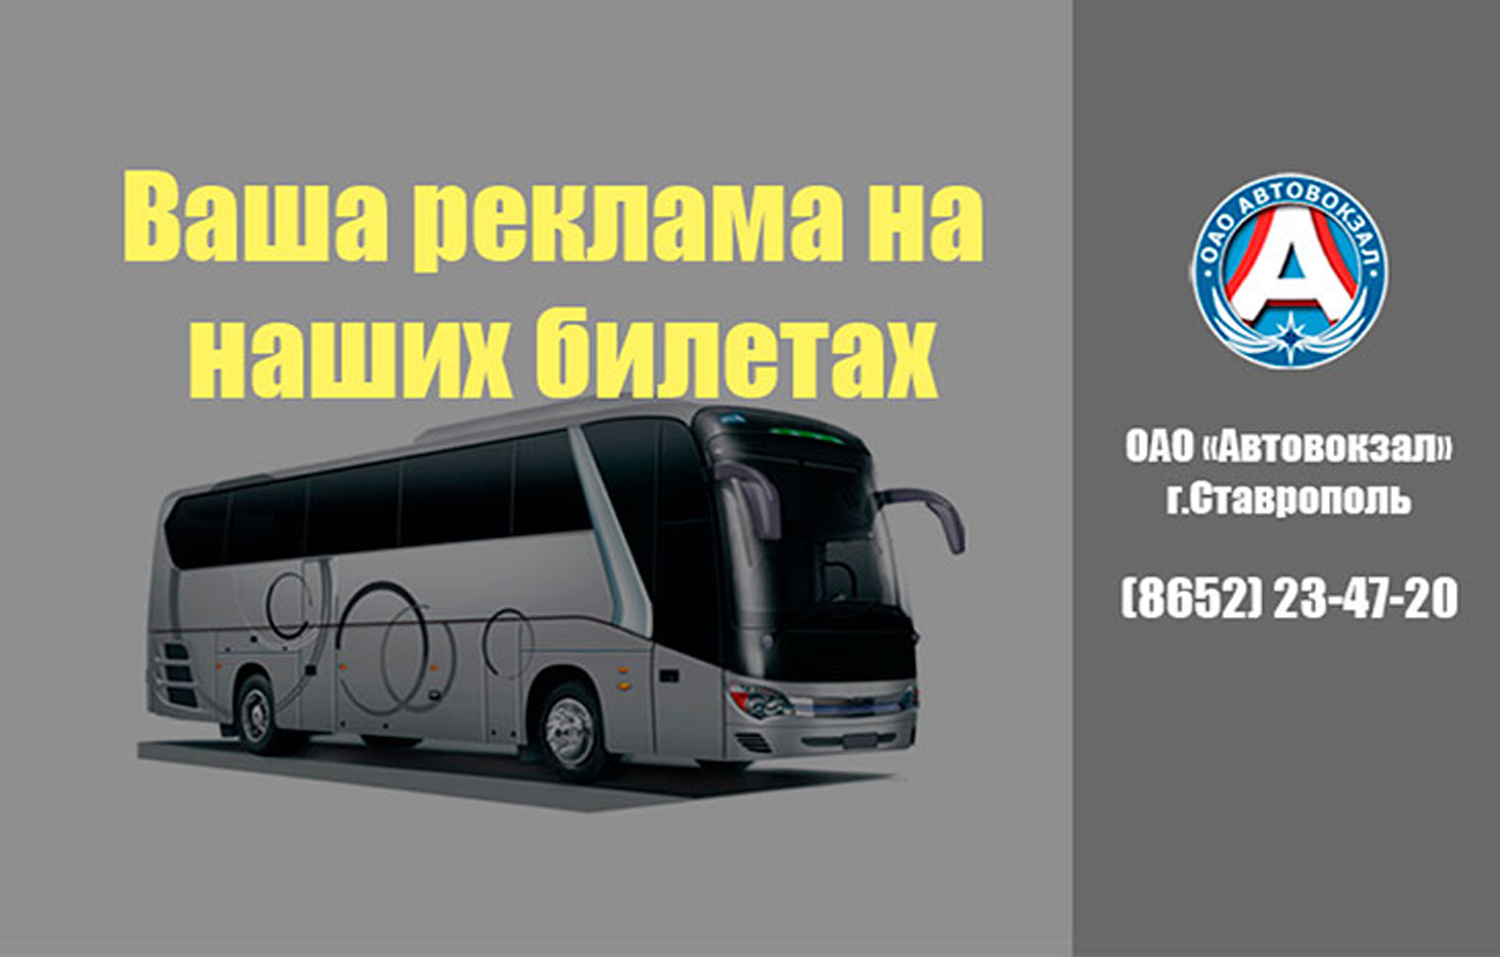 Ставрополь Волгоград автобус. Список межгородских автобусов Астрахань.